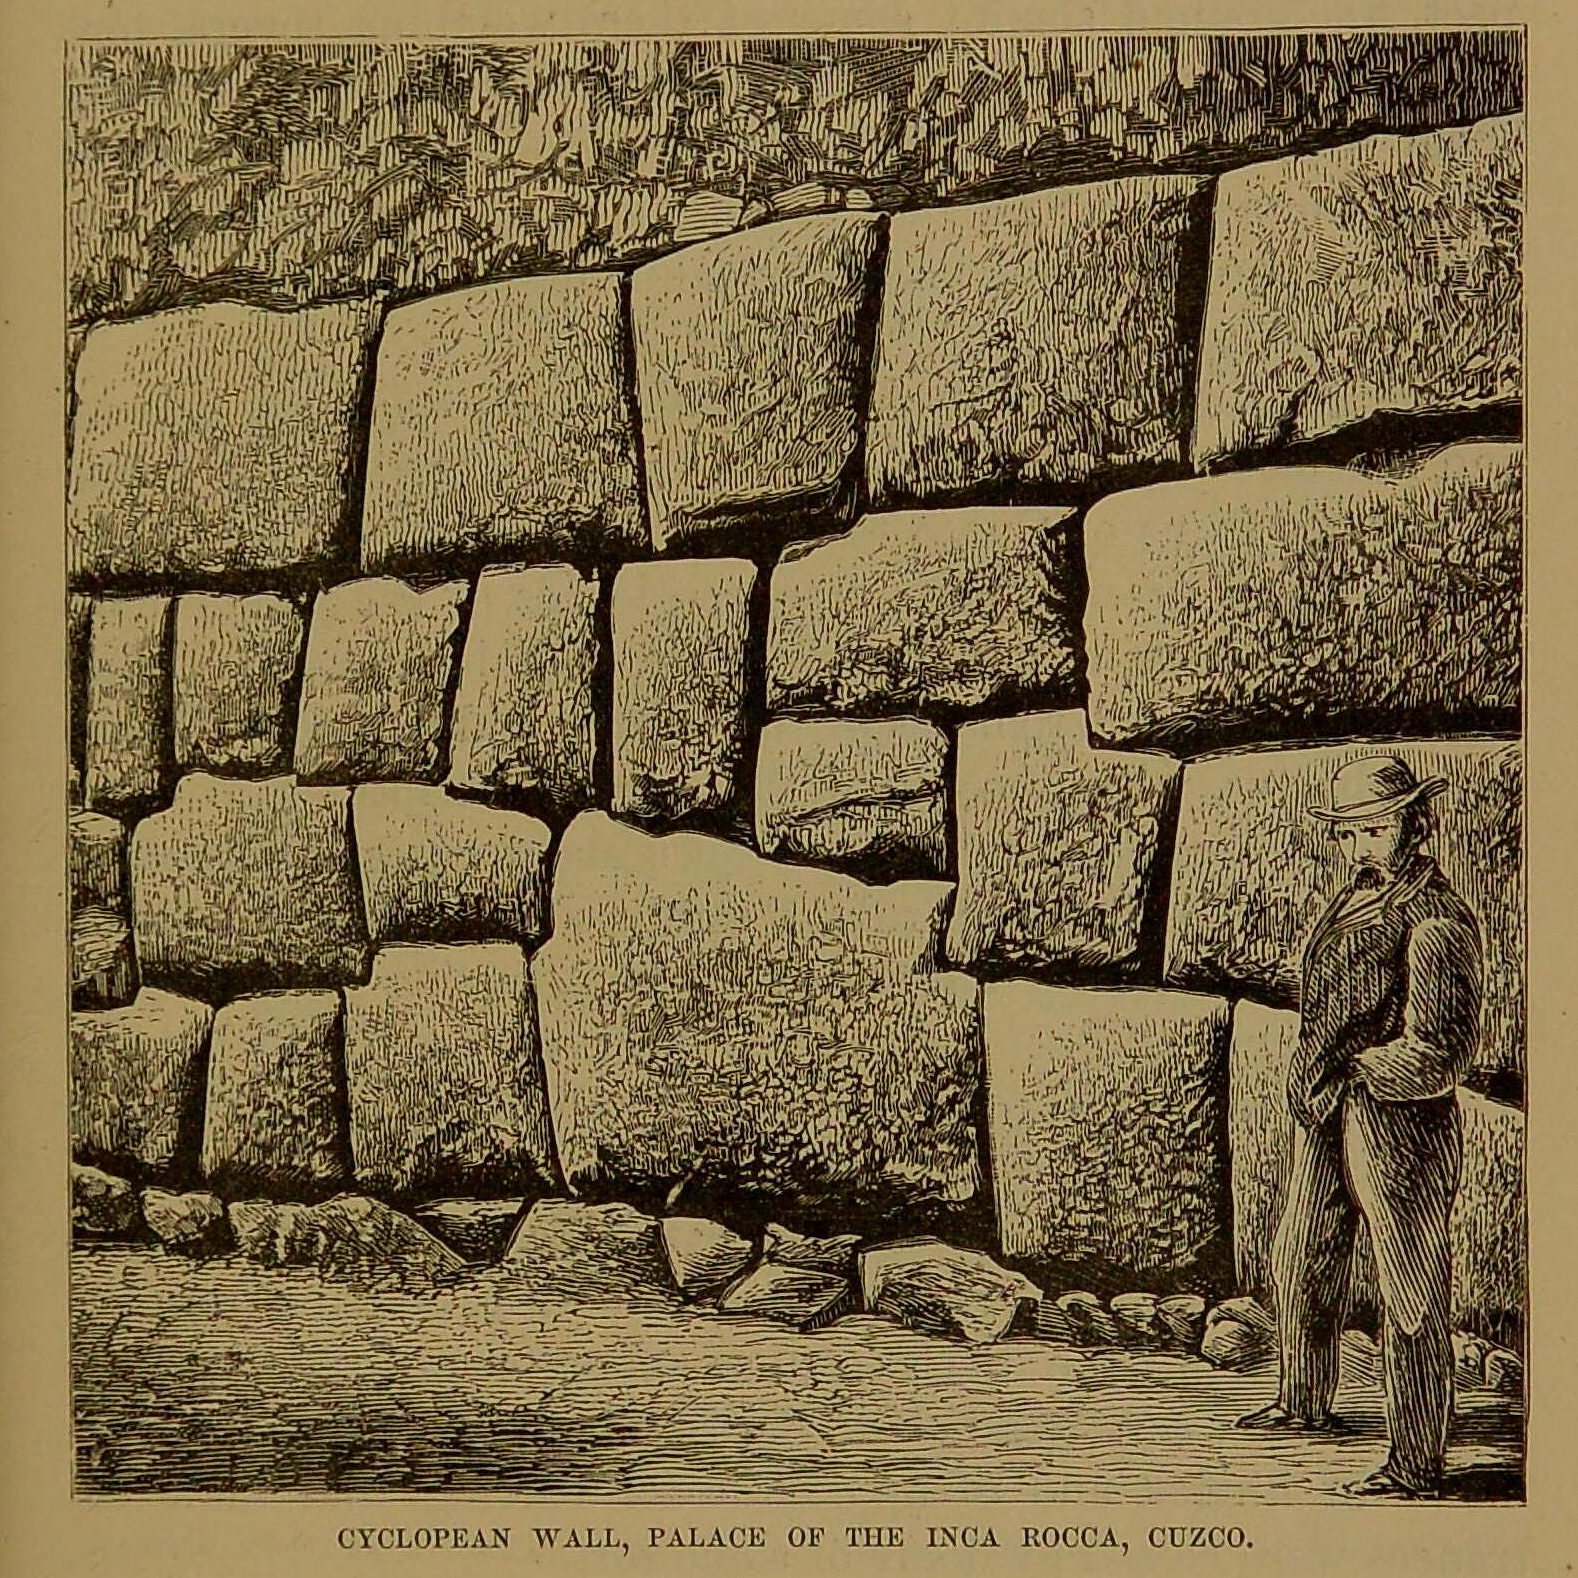 Ilustração do livro de Squier mostra muro de palácio inca